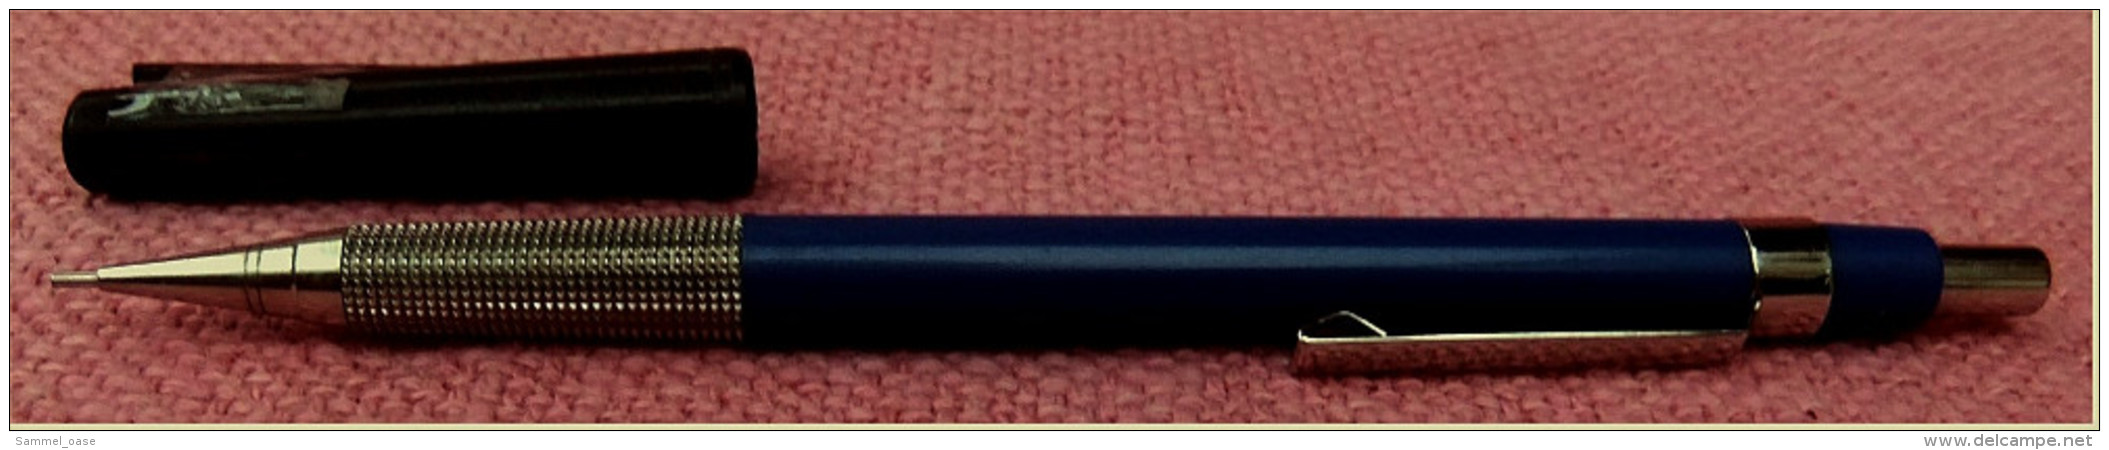 Seltener Staedtler Micrograph F 77017 Bleistift / Druckbleistift - Mechanical Pencil 0,7 Mm - Blau - Schrijfgerief